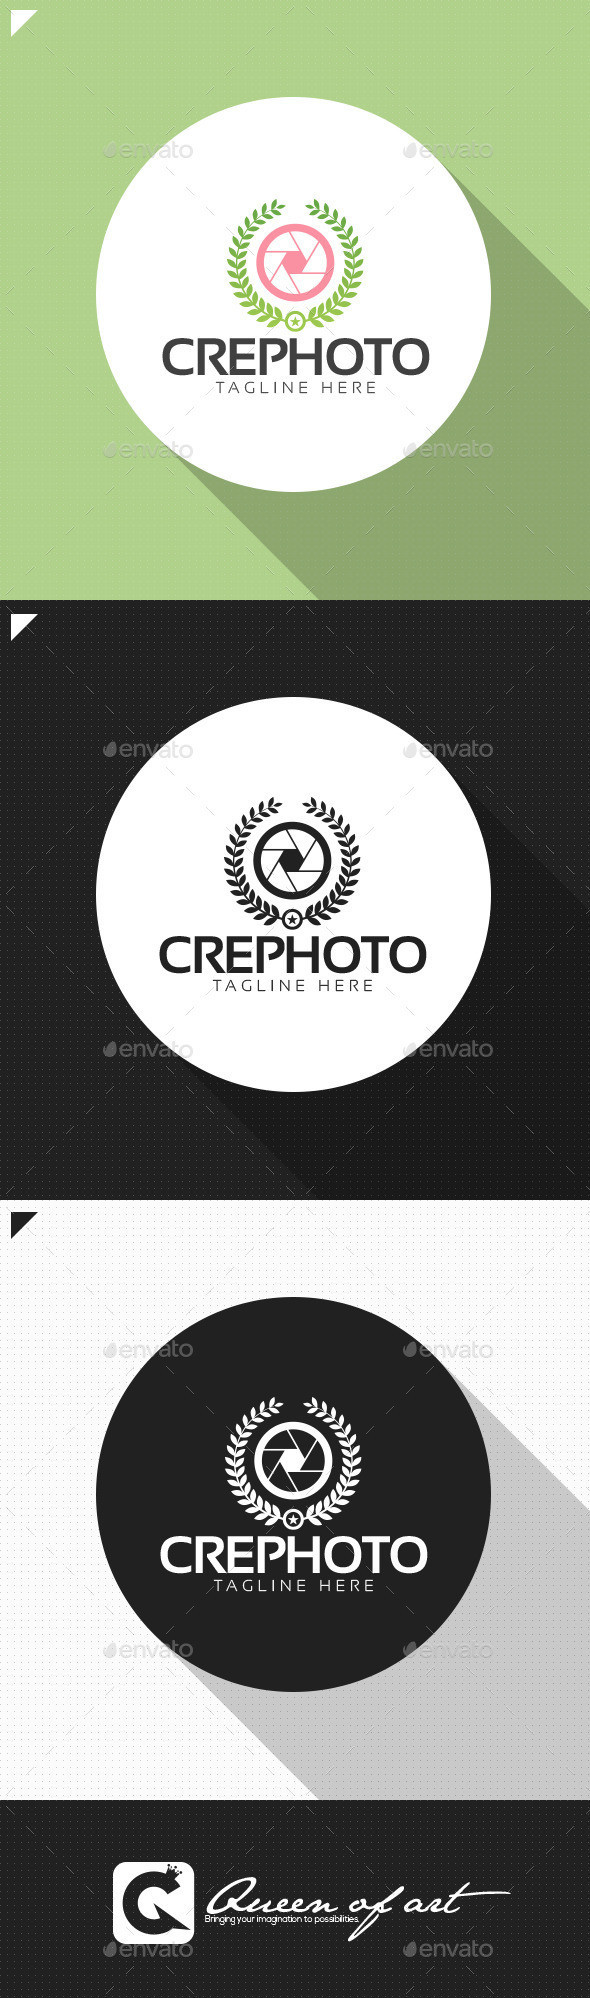 Crephoto